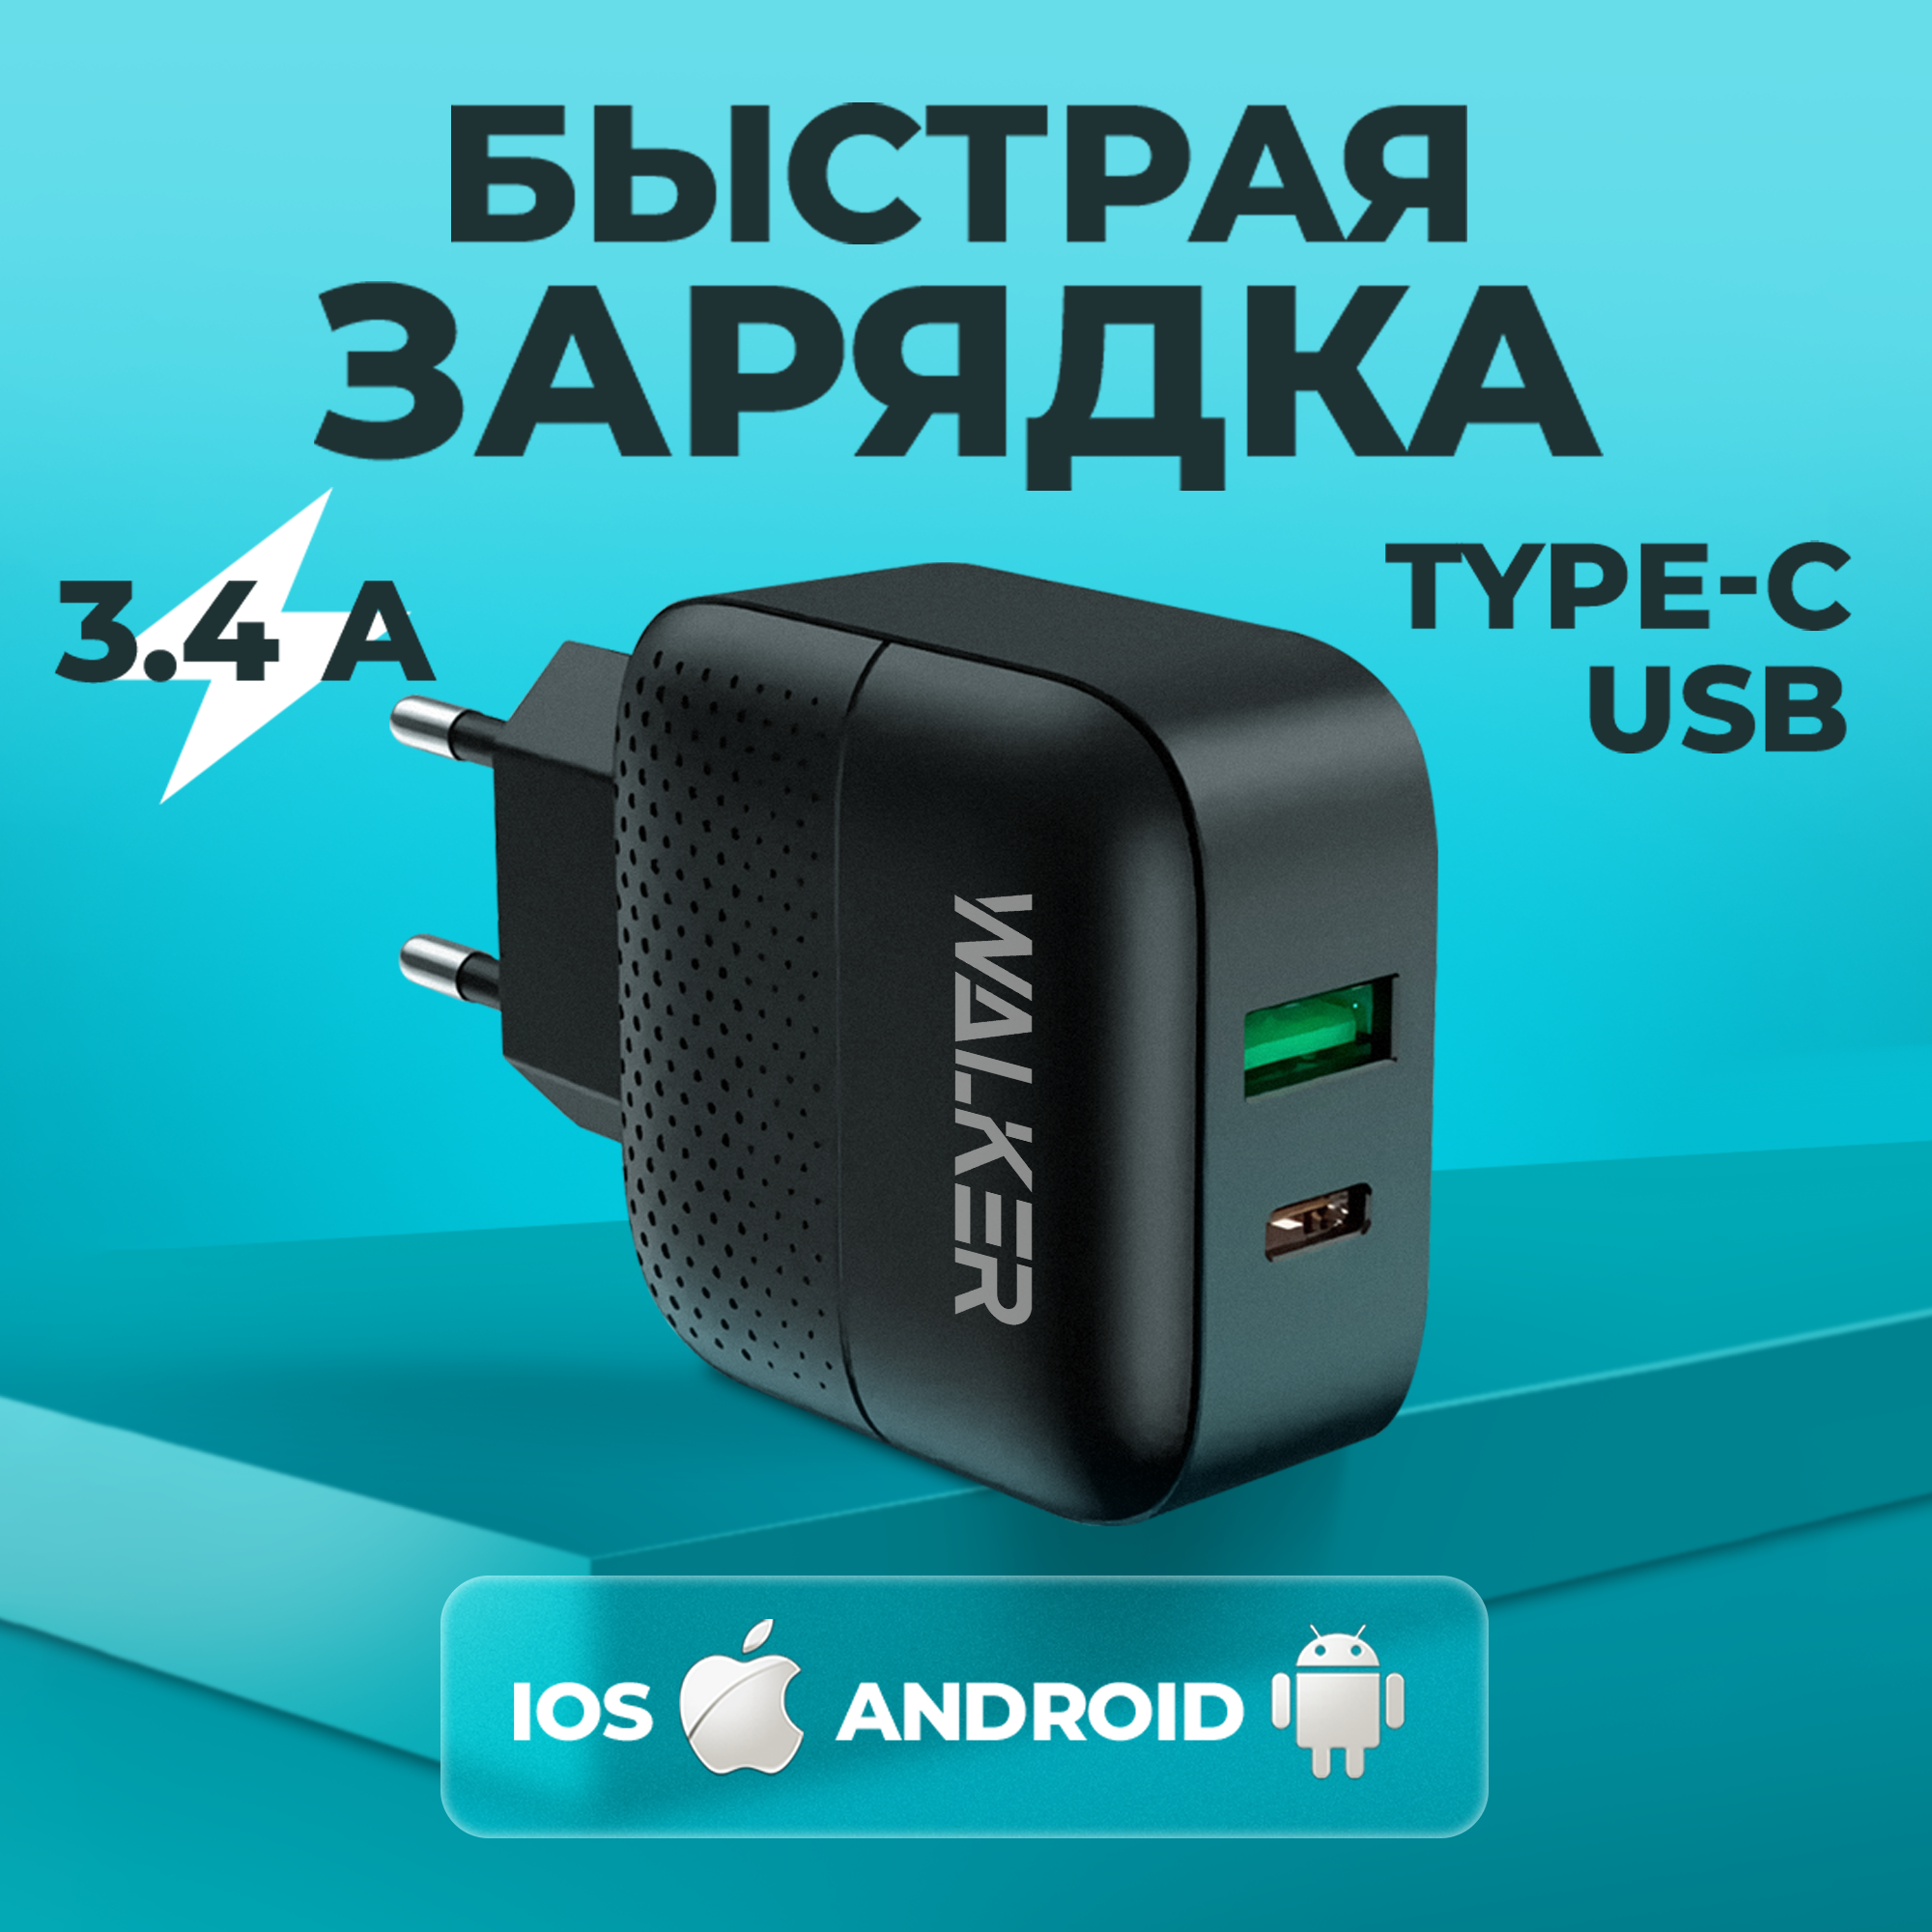 Сетевое зарядное устройство для телефона WALKER WH-37 2 разъема USB и Type-C 18W, быстрая зарядка, блок питания для xiaomi, iphone, на андроид, черный